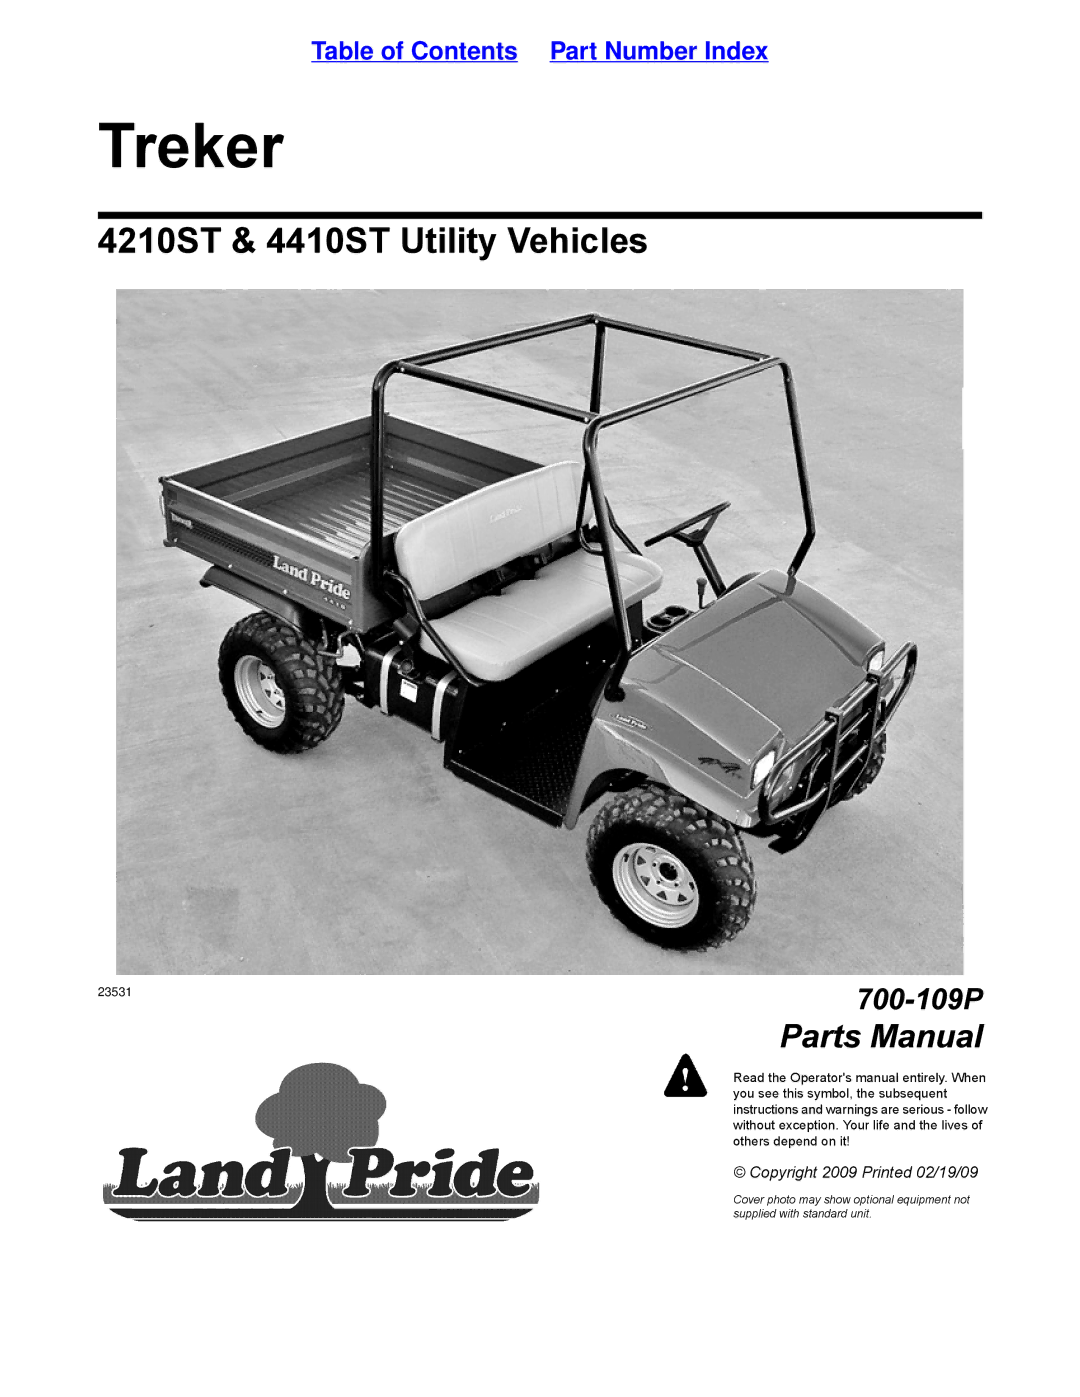 Land Pride 700-109P manual Treker 